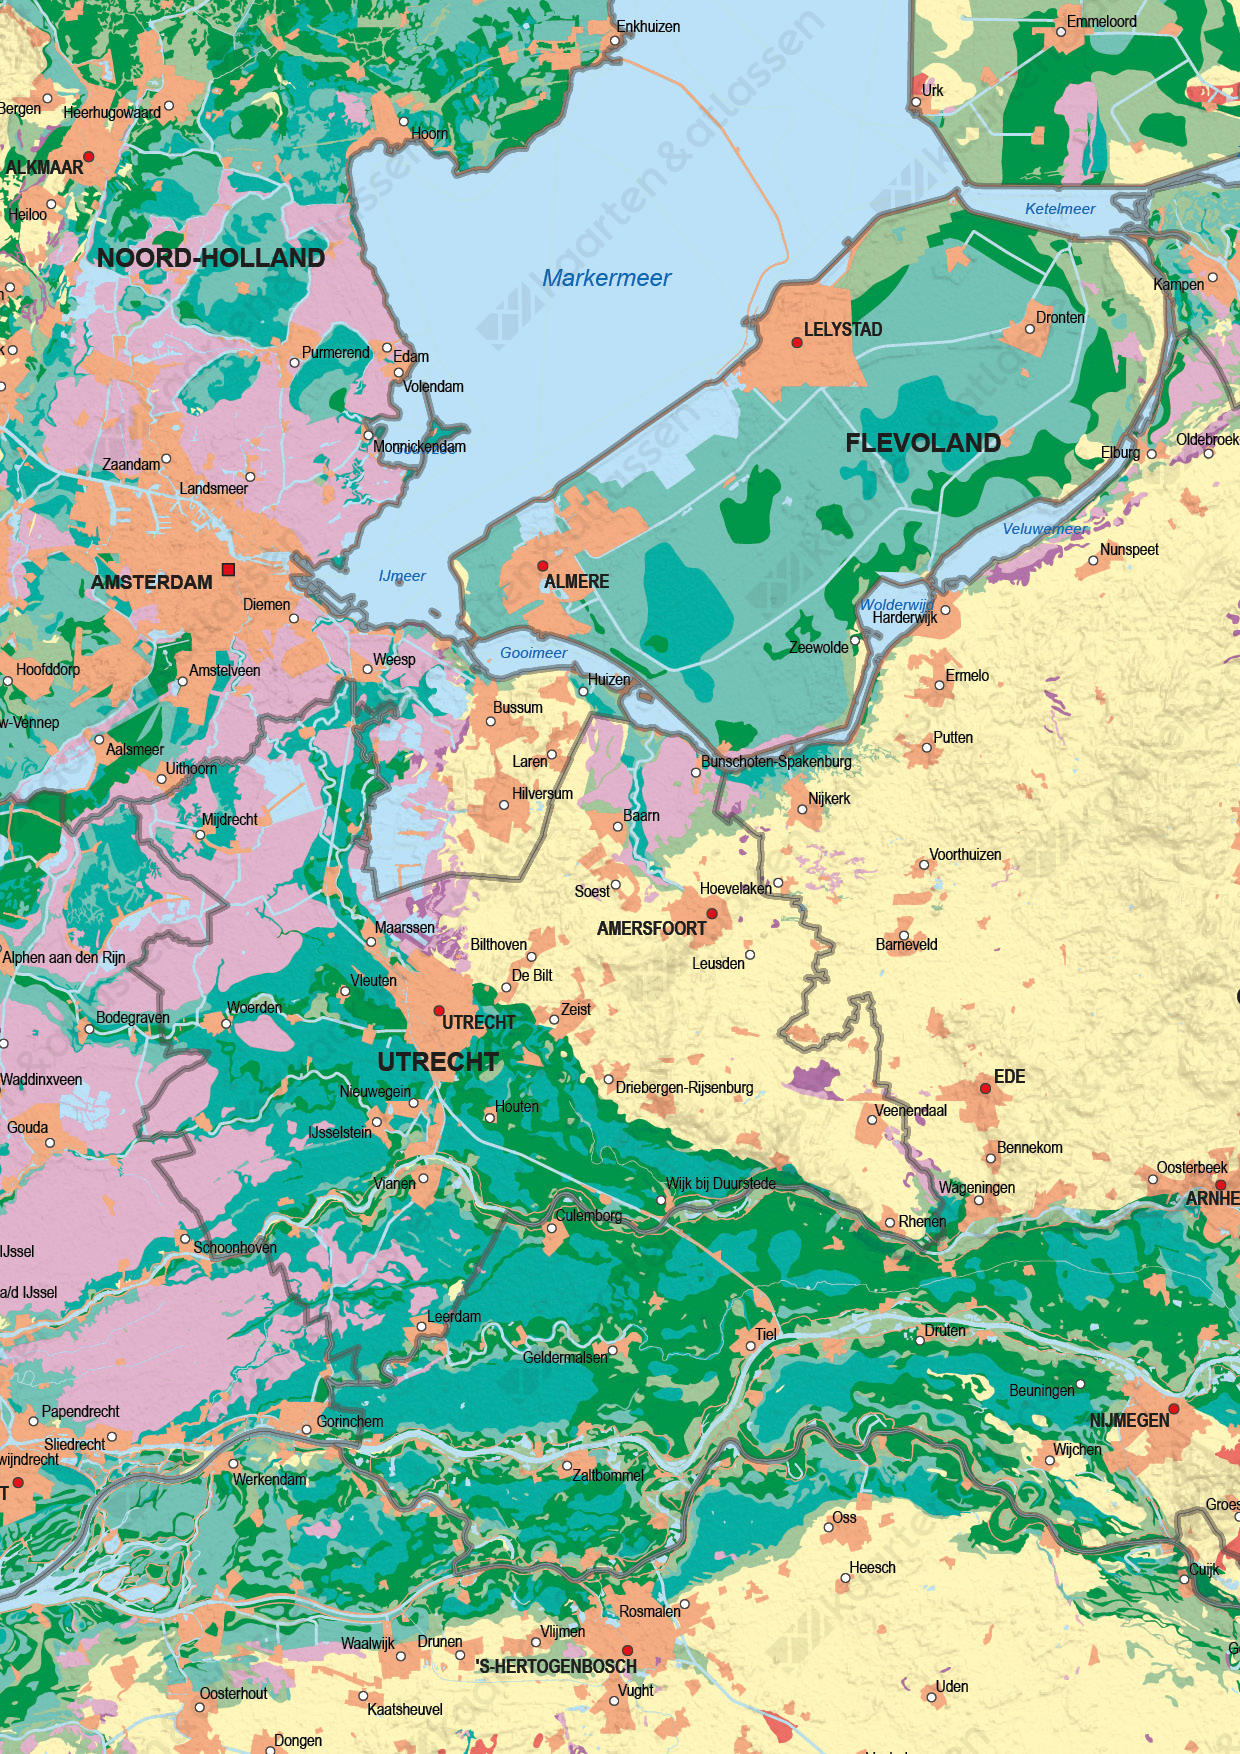 Digitale Grondsoortenkaart Nederland